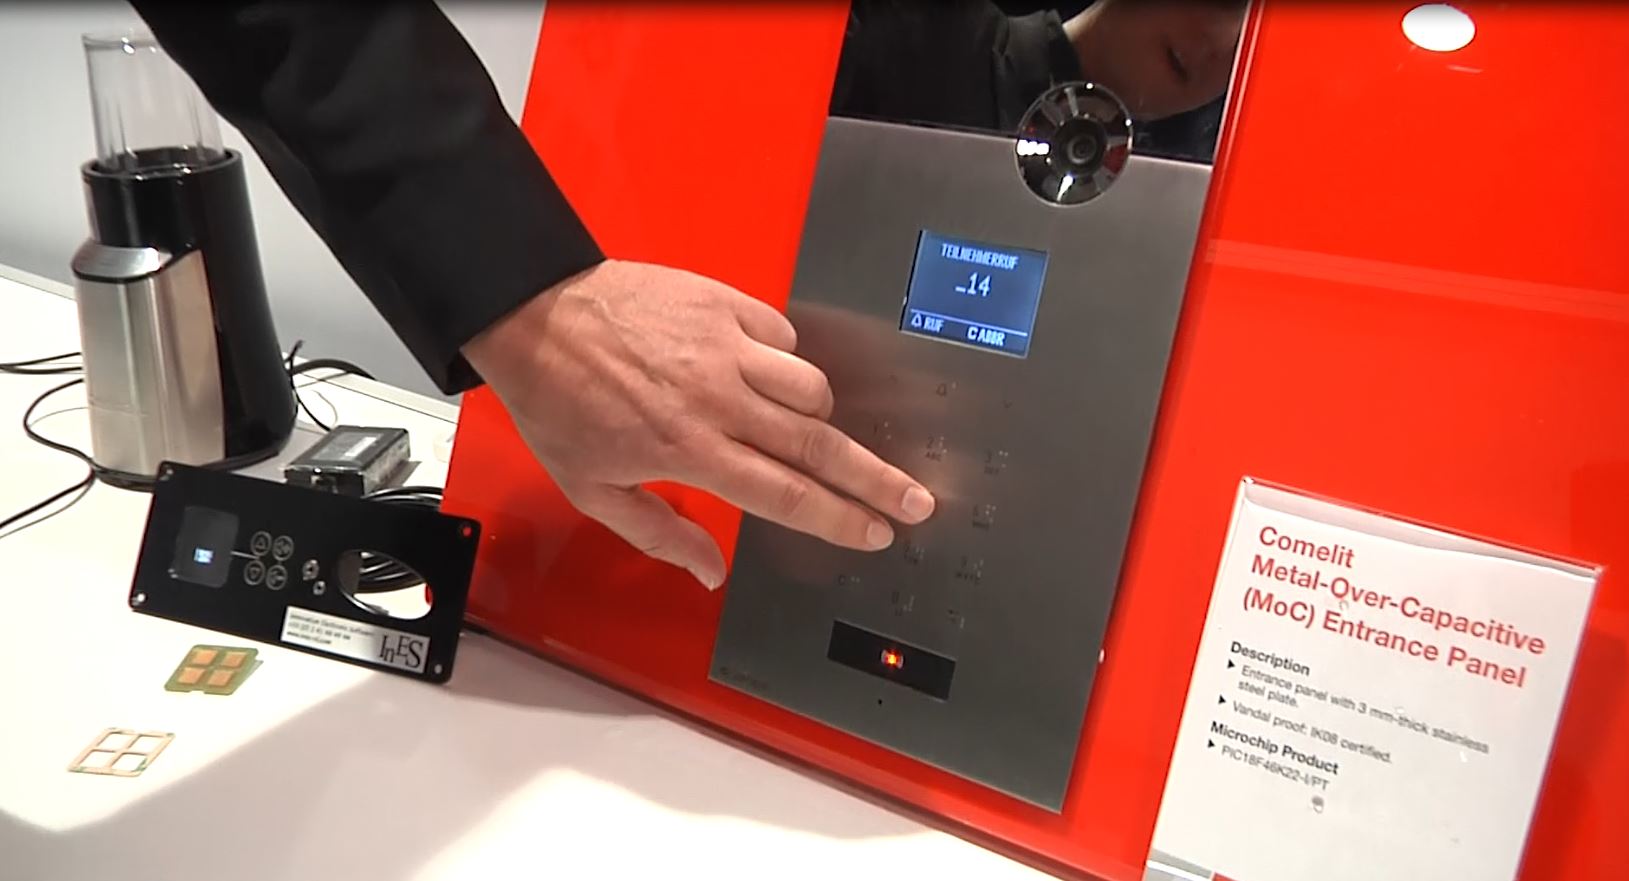 CES 2015上展示的Microchip触摸解决方案